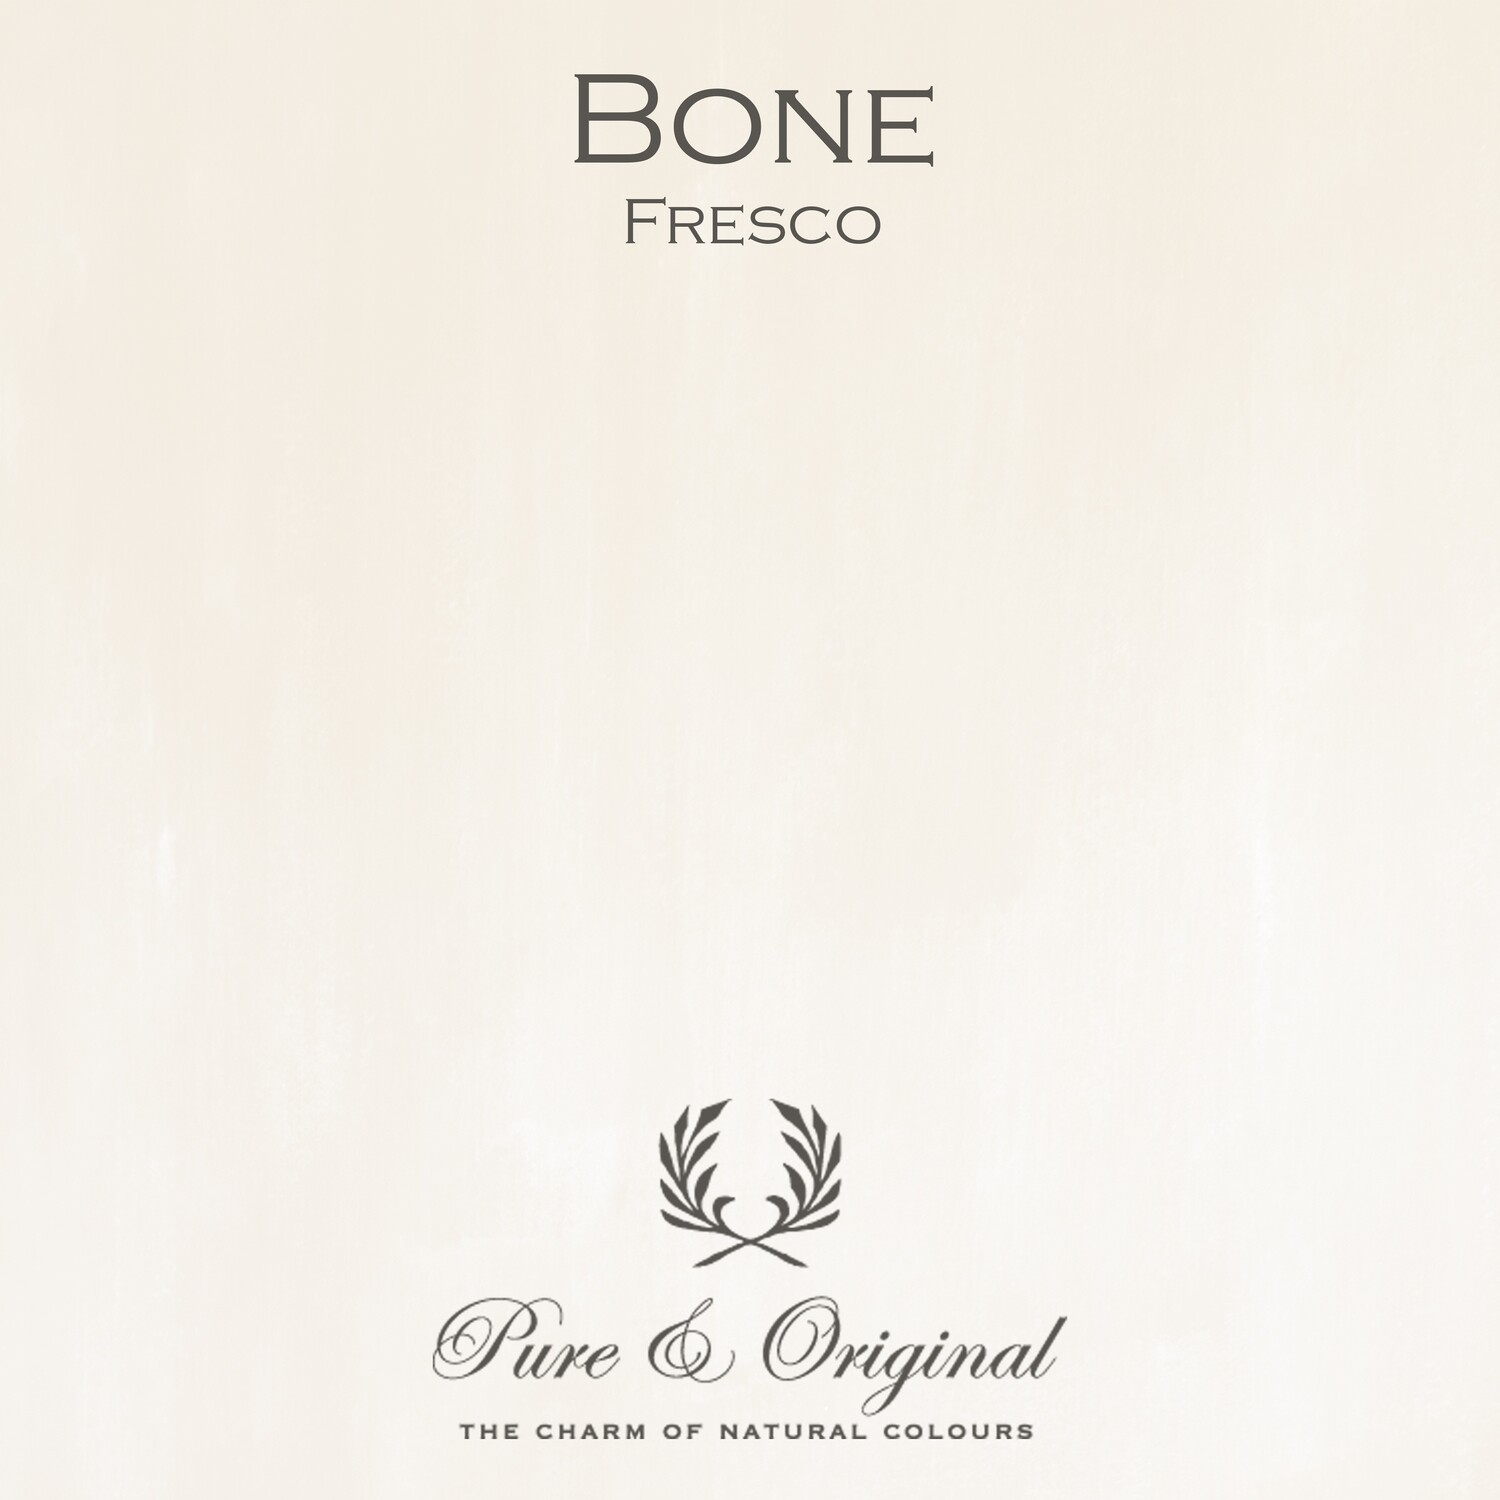 Bone Fresco